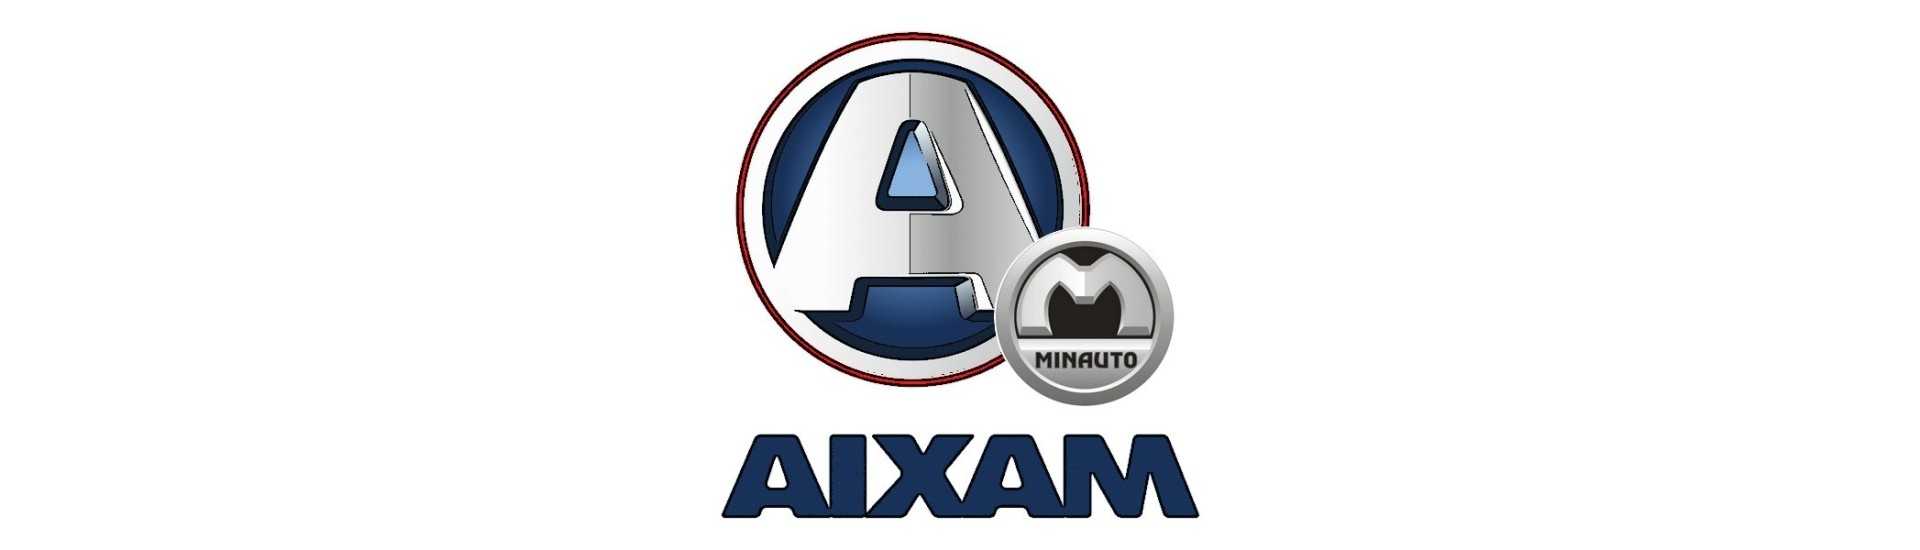 Migliore prezzo alternativa cintura auto senza licenza Aixam Minauto